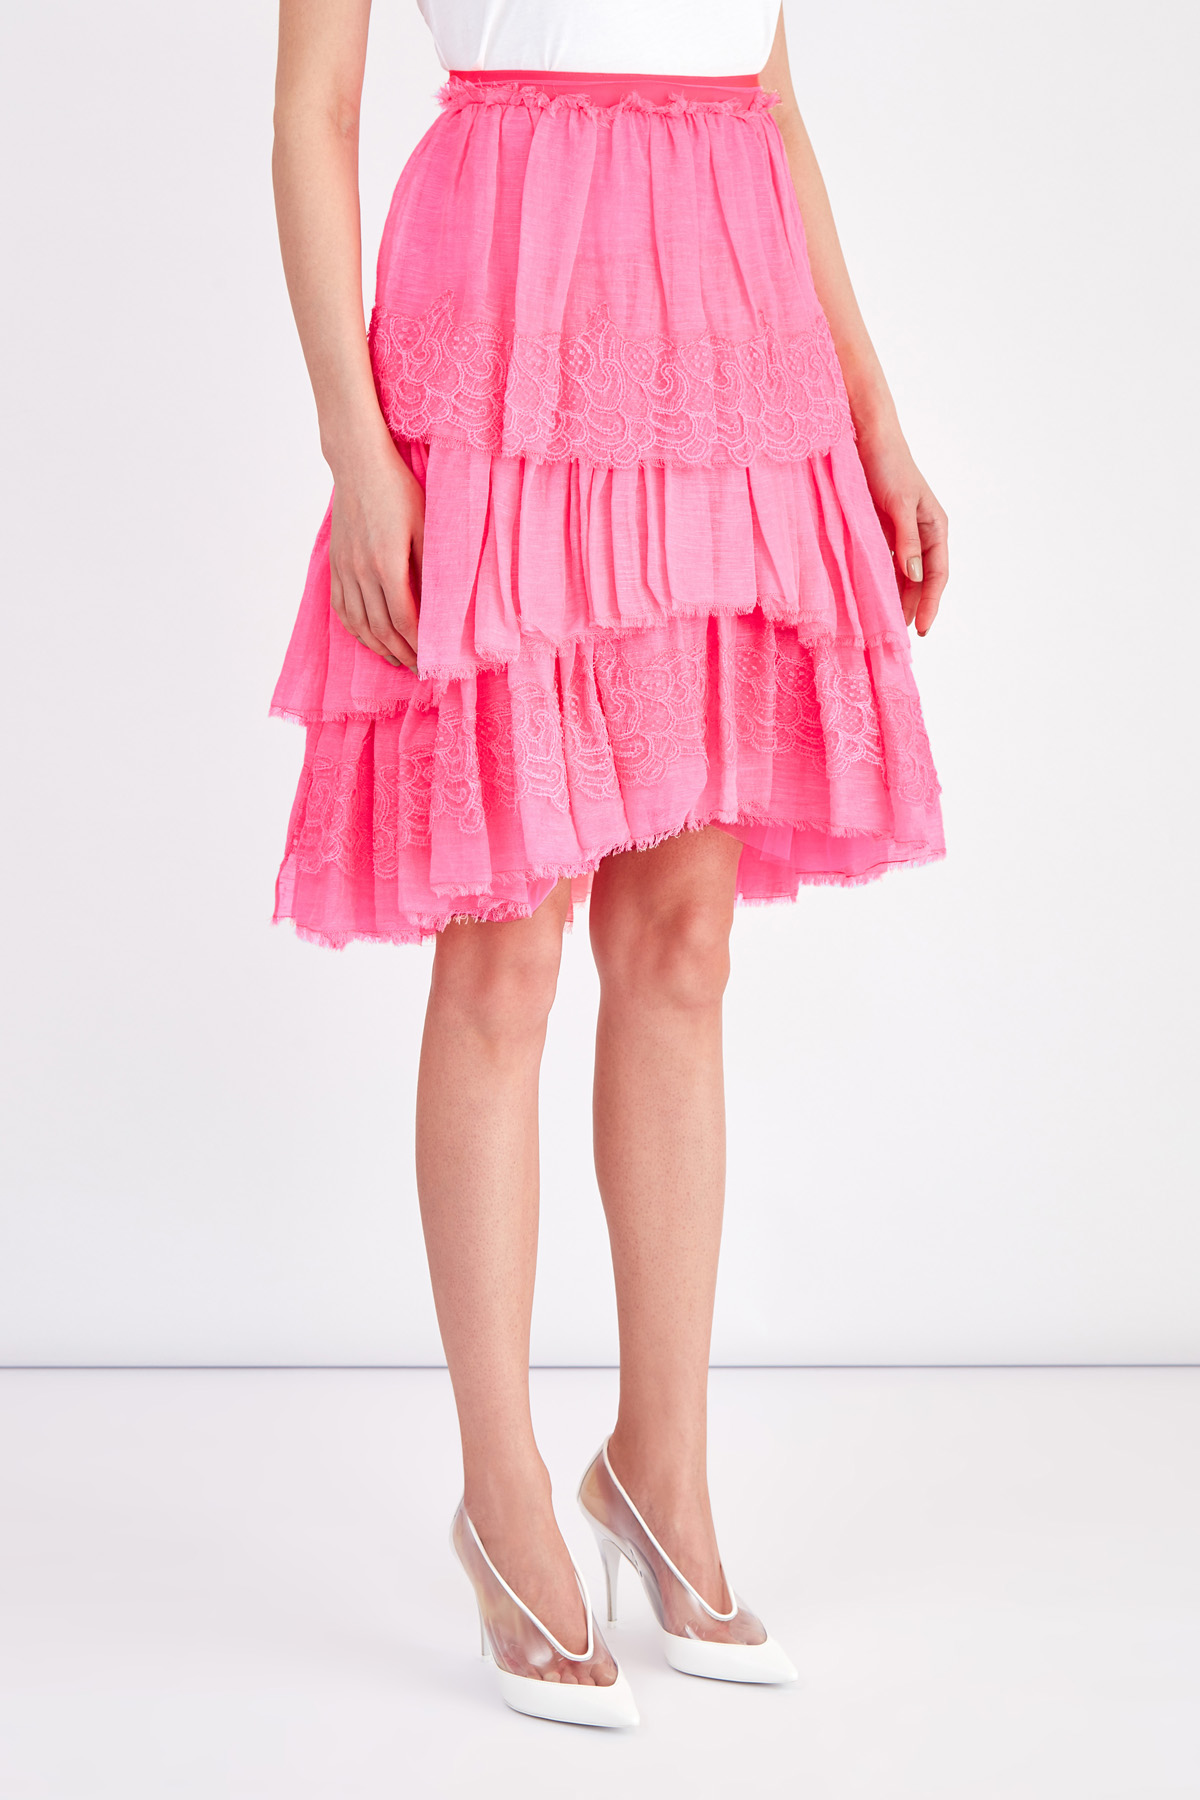 Ярусная юбка из хлопка и льна с отделкой кружевом ручной работы ERMANNO SCERVINO, цвет розовый, размер 40;42 - фото 3